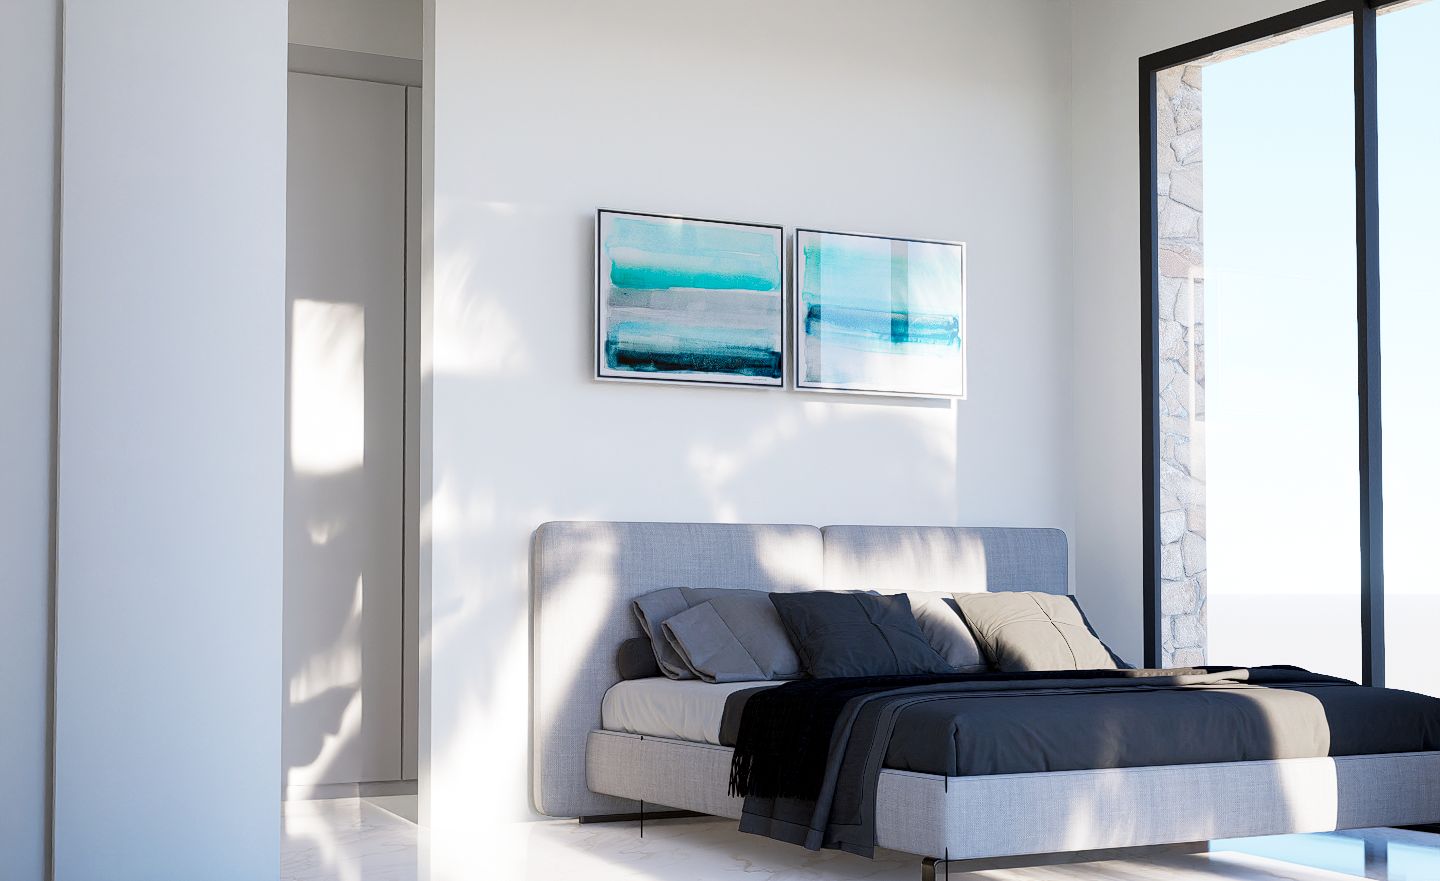 Finestrat: Luxusvilla mit Panoramablick